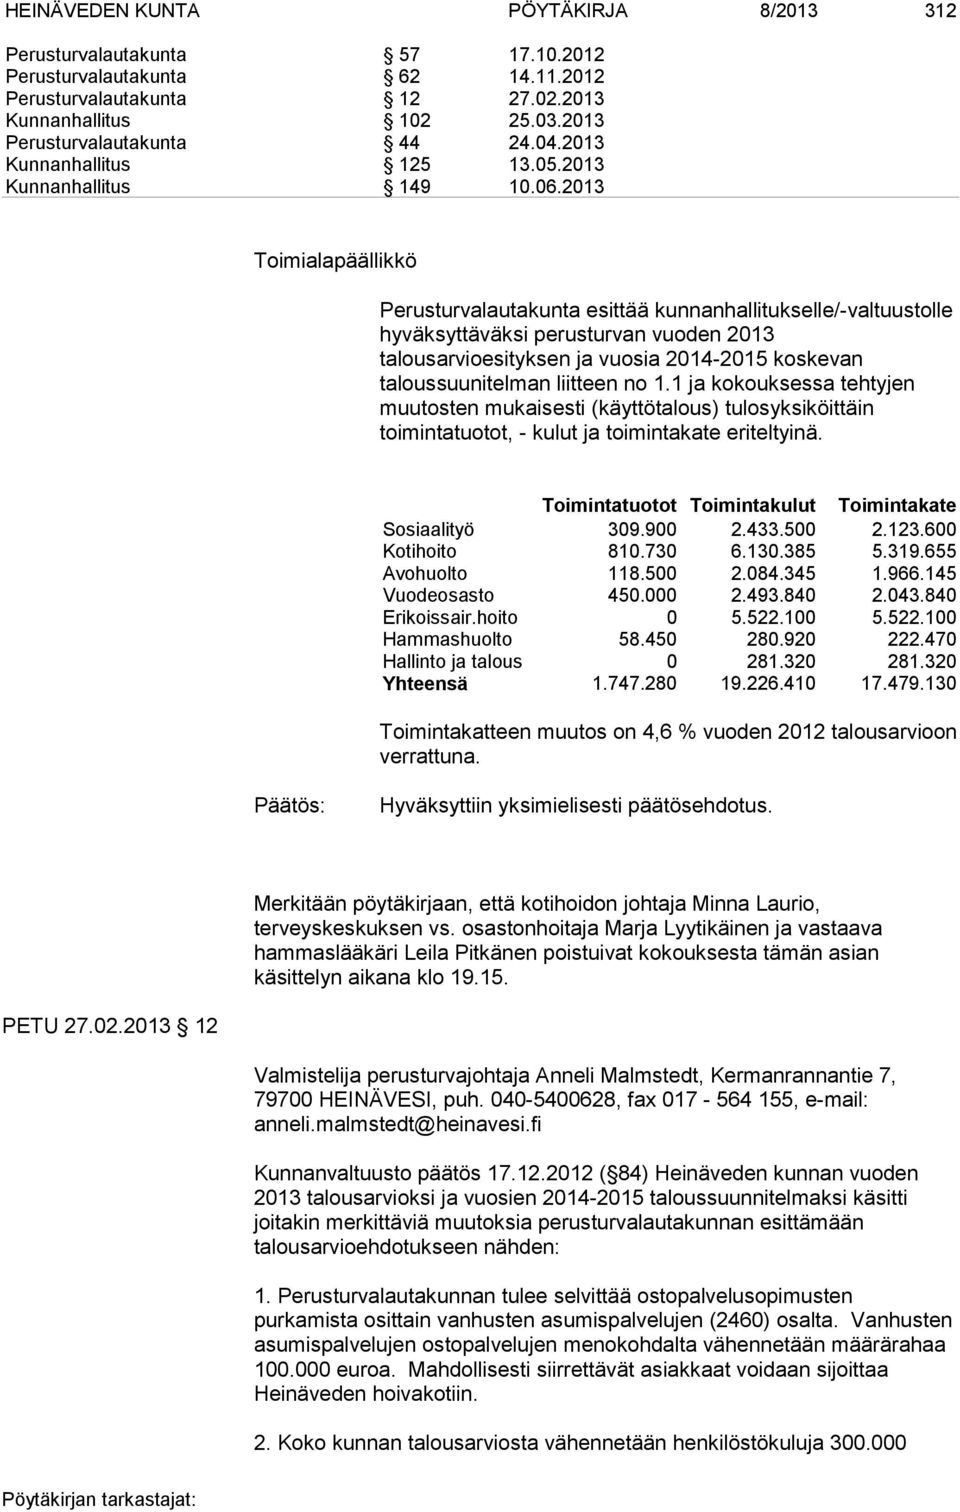 2013 Toimialapäällikkö Perusturvalautakunta esittää kunnanhallitukselle/-valtuustolle hyväksyttäväksi perusturvan vuoden 2013 talousarvioesityksen ja vuosia 2014-2015 koskevan taloussuunitelman